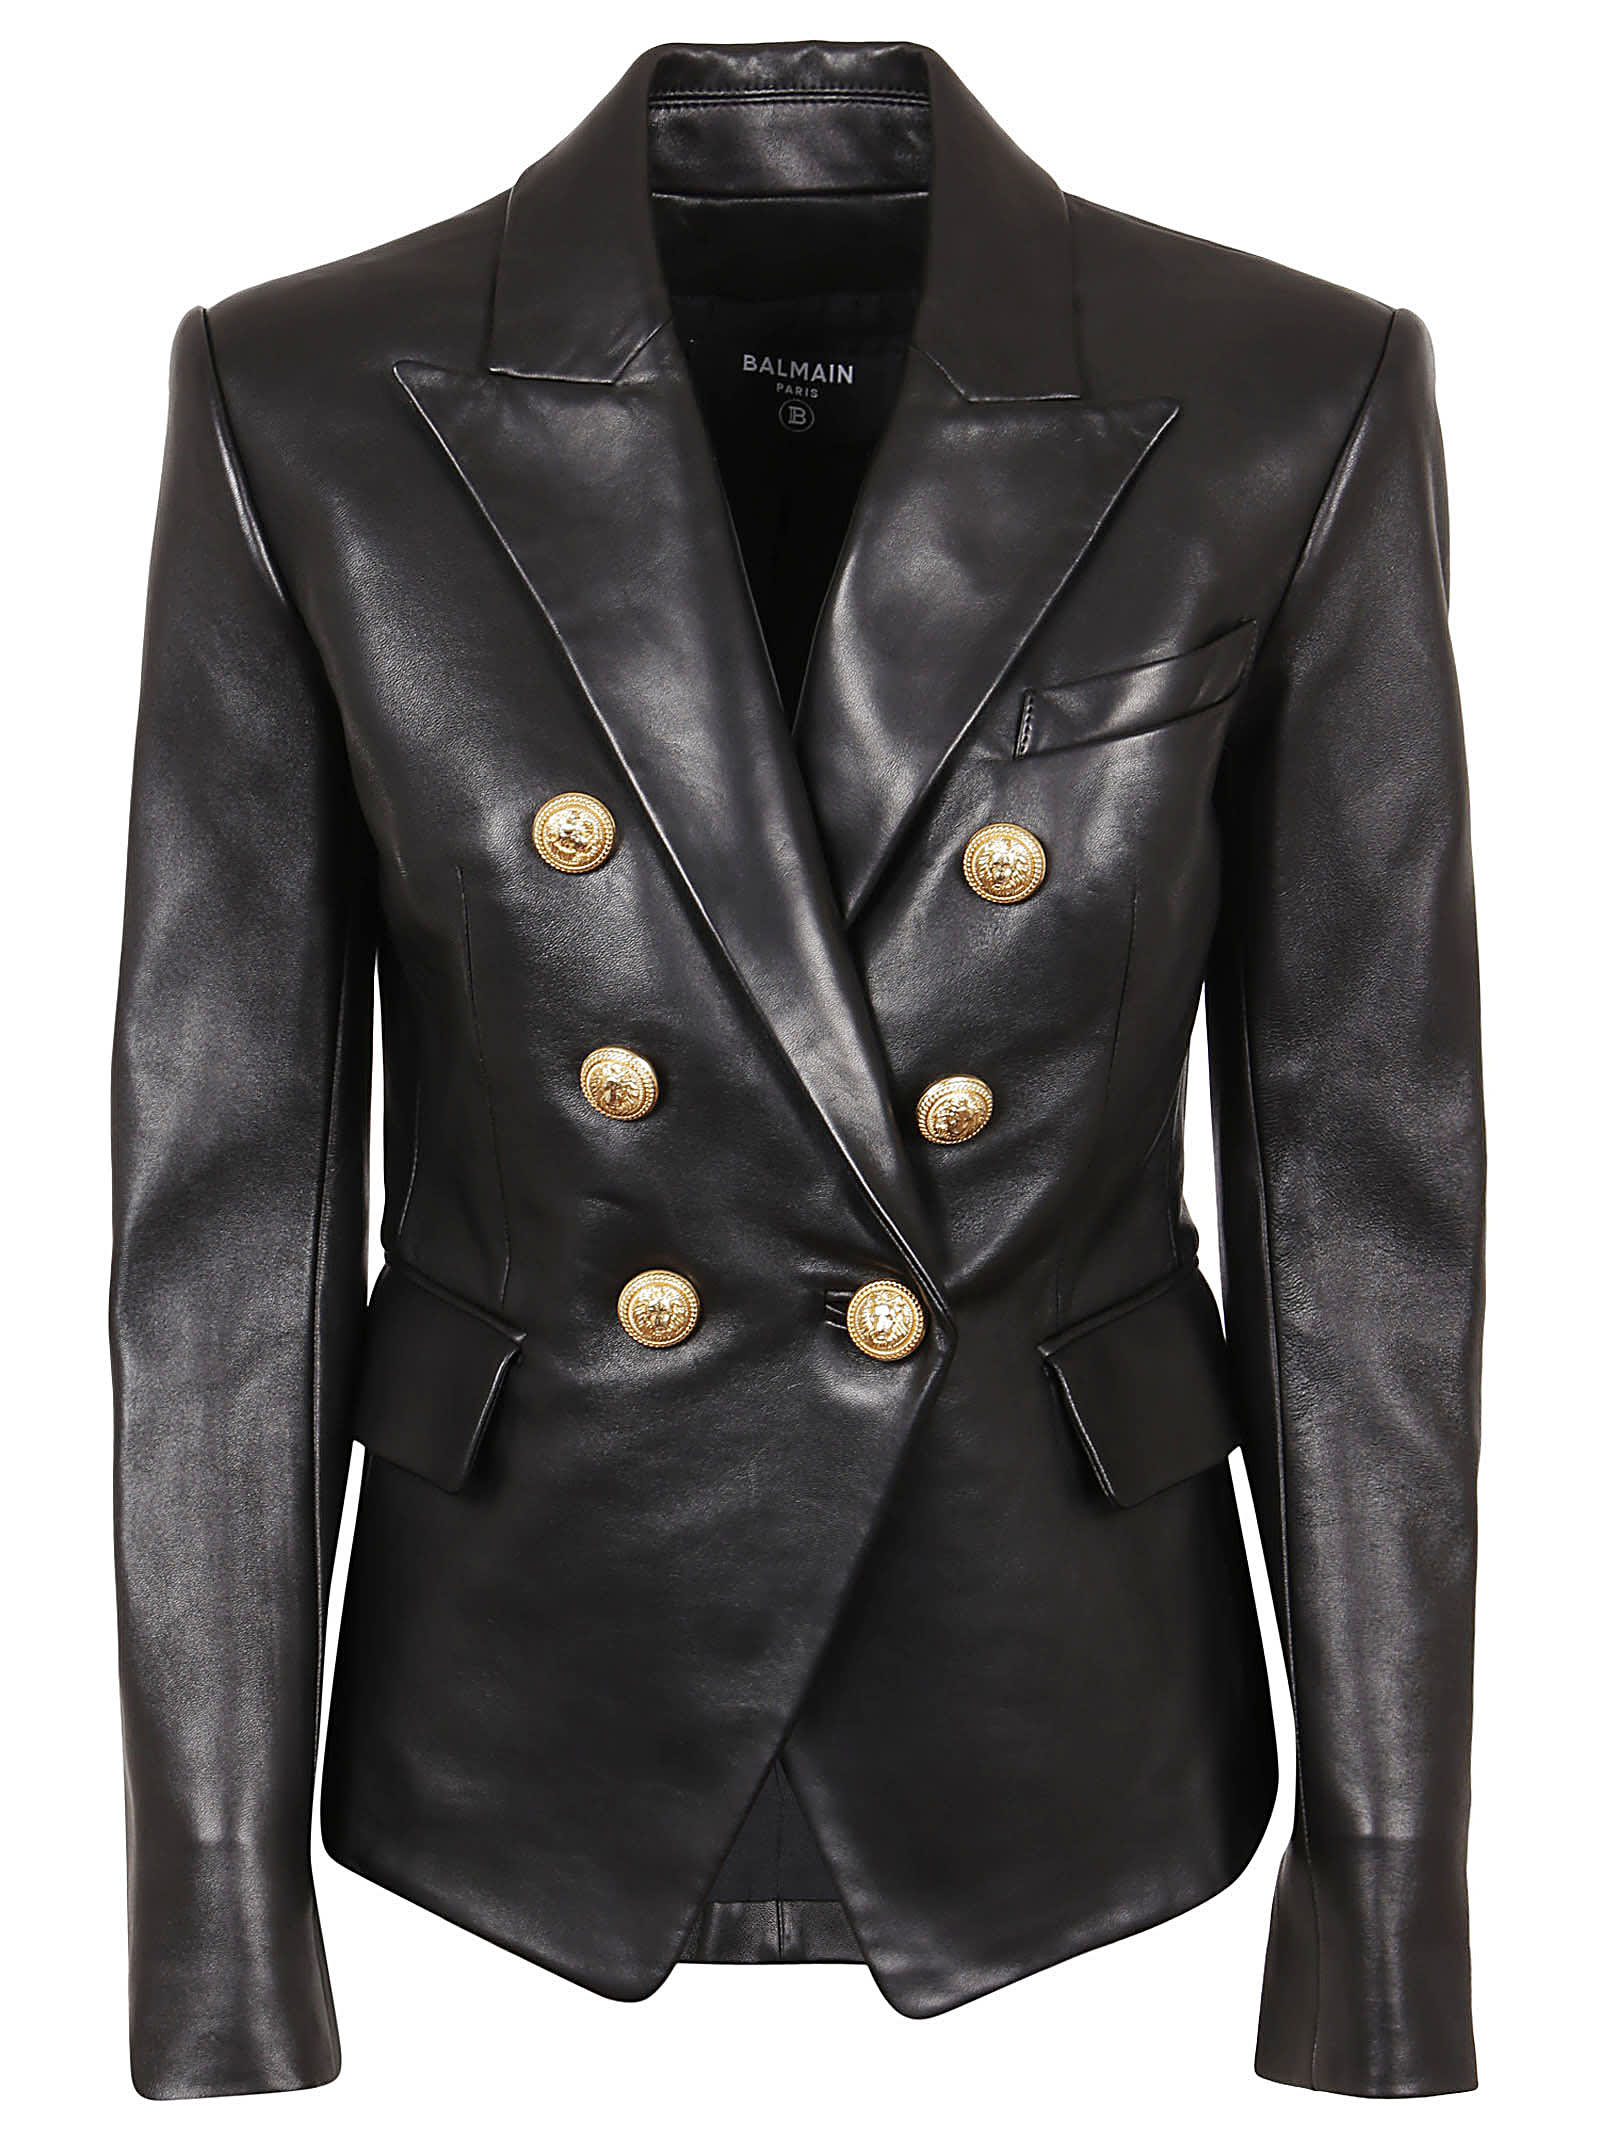 Balmain 6 Btn Leather Jacket